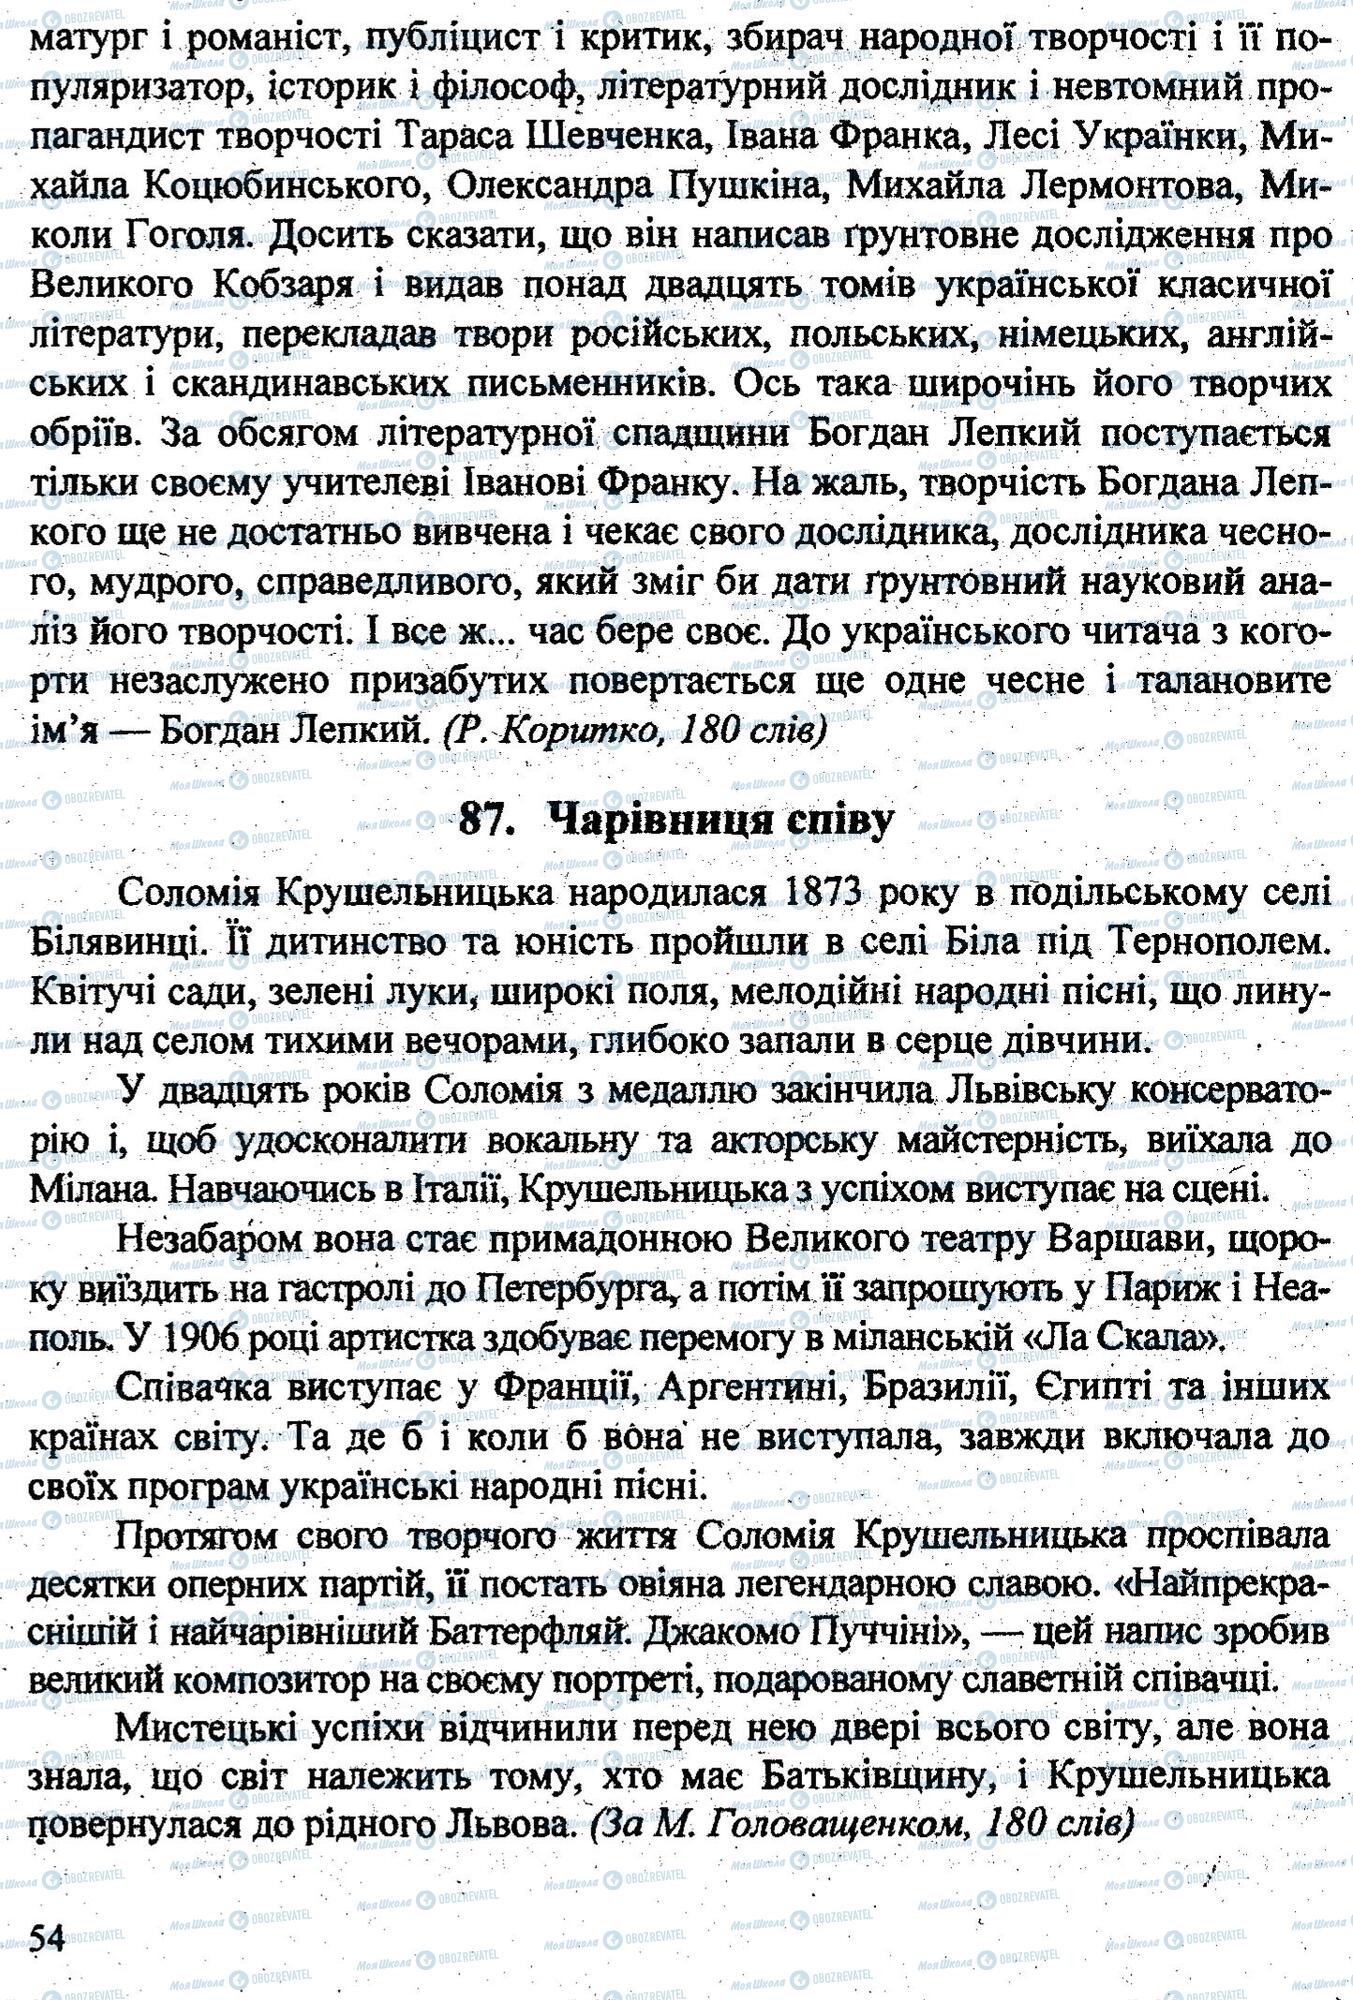 ДПА Укр мова 9 класс страница 0053